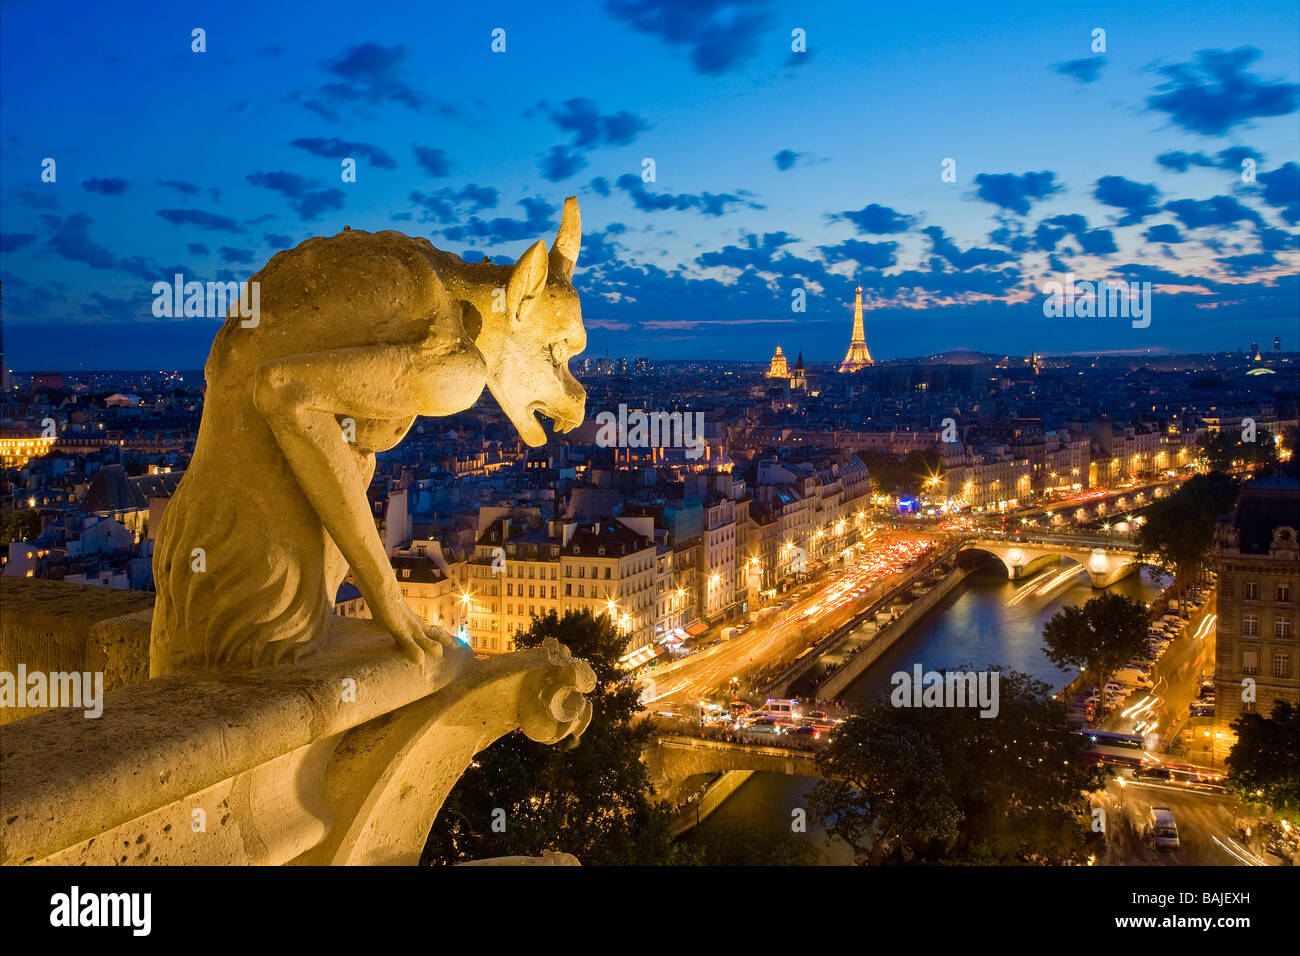 Francia, Parigi, le rive della Senna sono classificati come patrimonio mondiale dall'UNESCO, la vista sulla città dalla cattedrale di Notre Dame Foto Stock